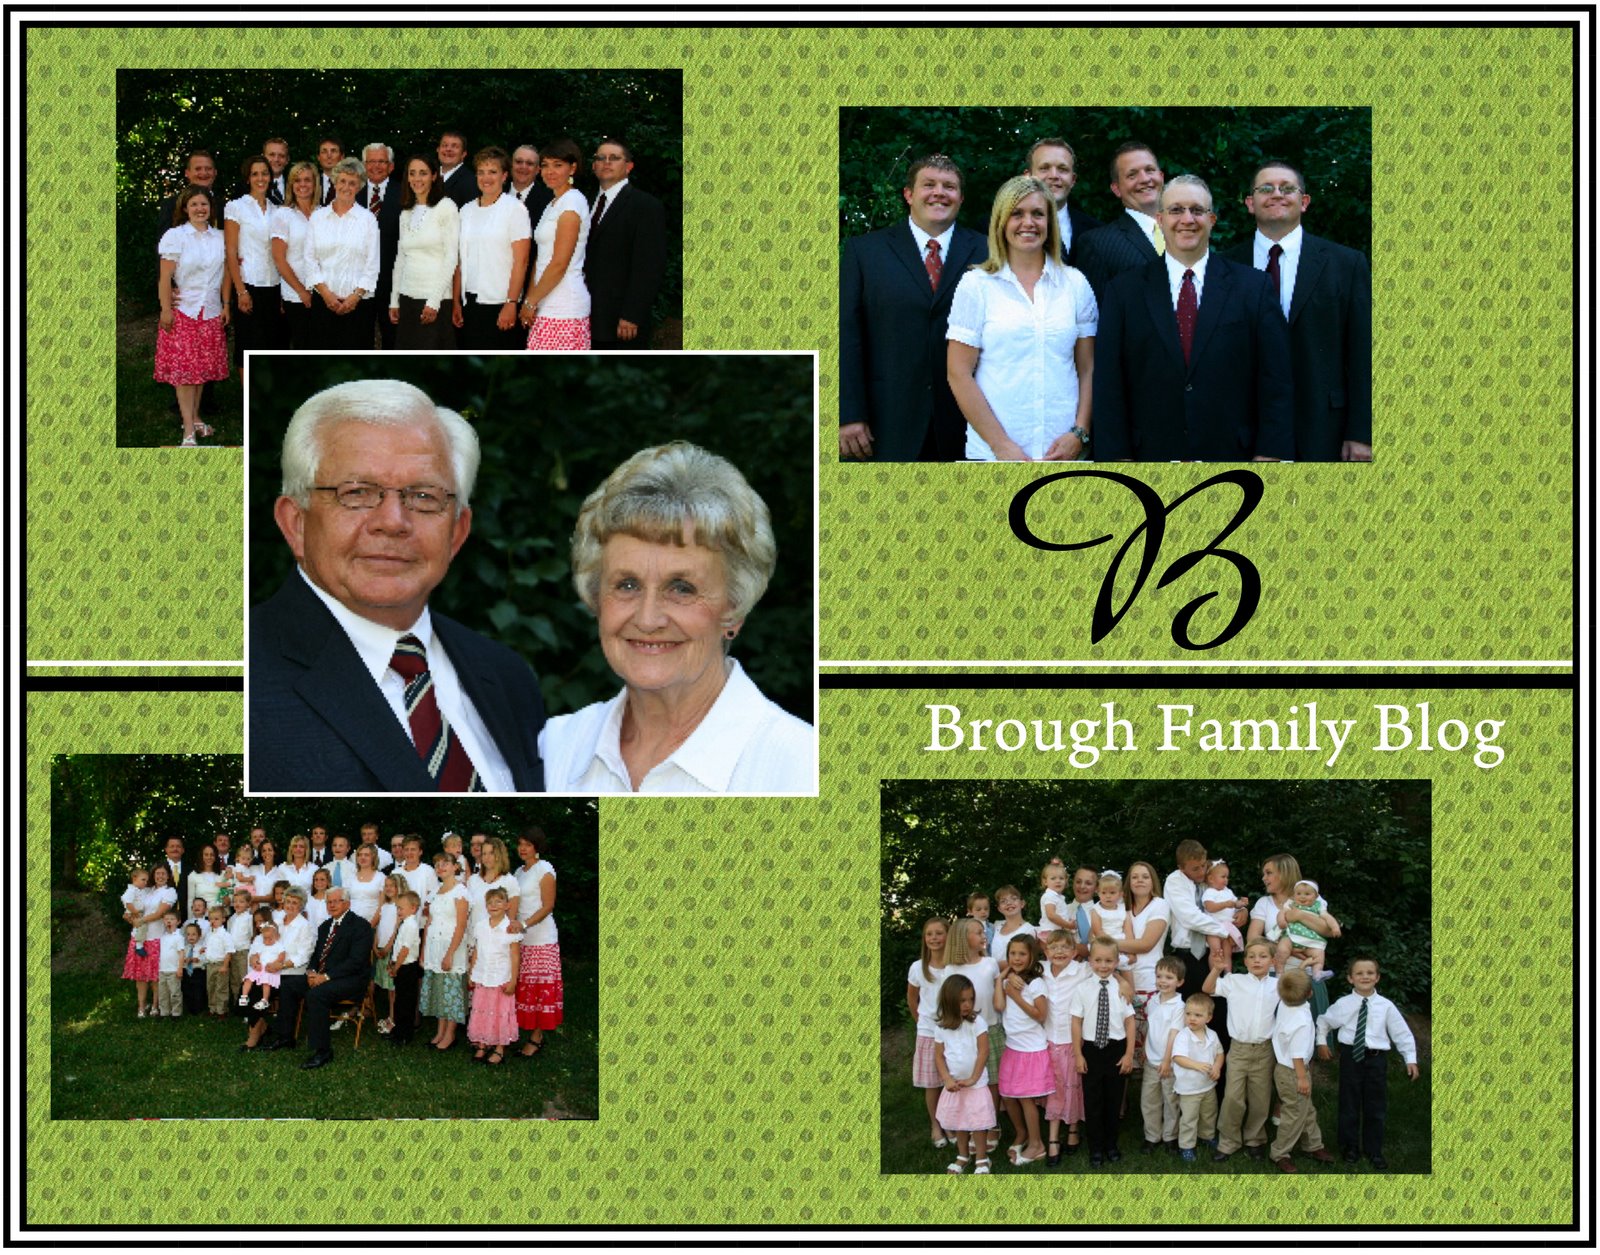 Brough Family Blog